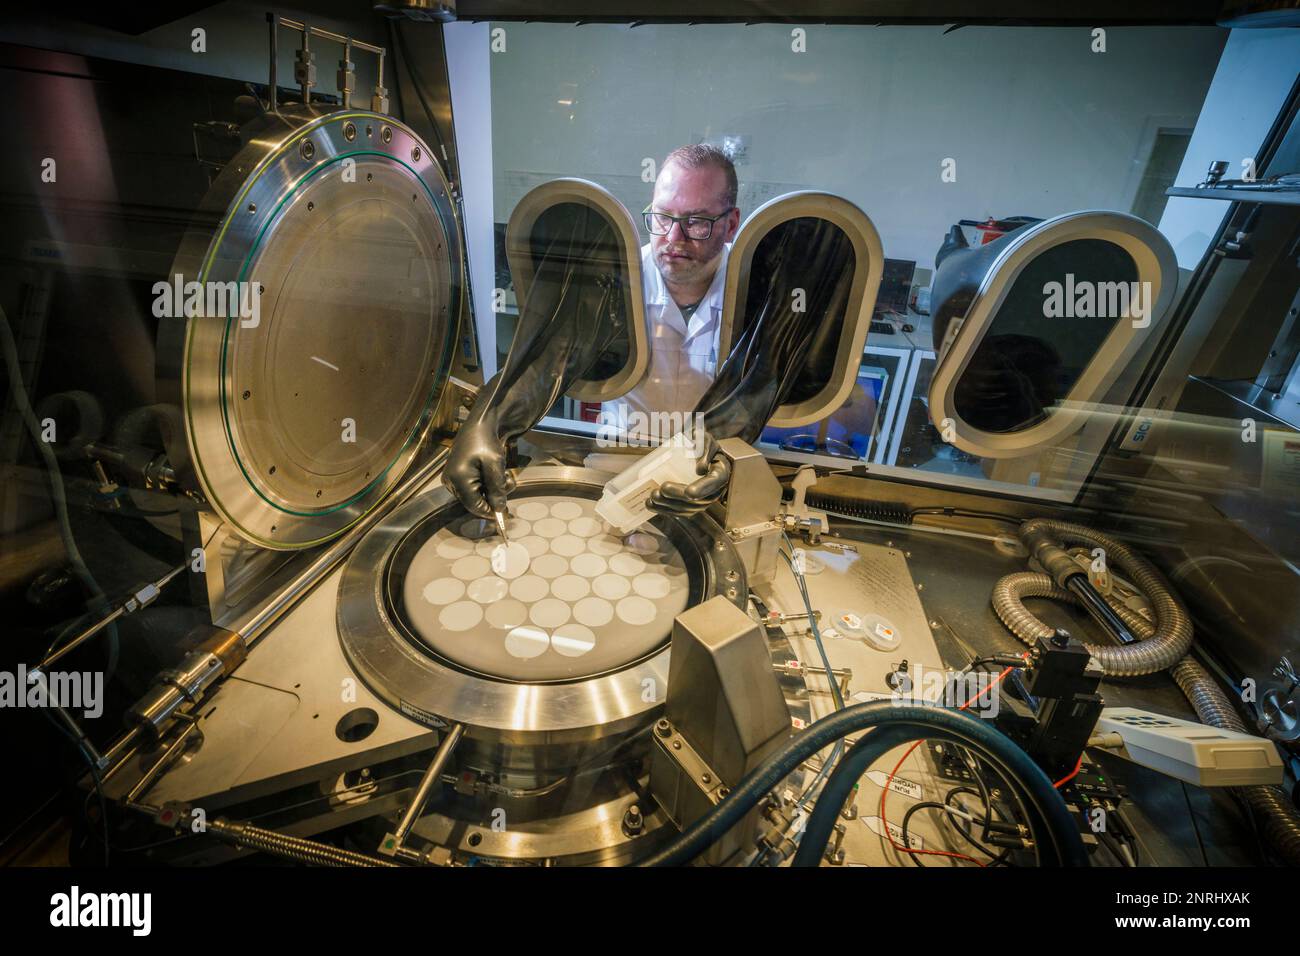 Wafer-Chips, die in einen MOCVD-Reaktor zur Abscheidung organischer Metalldampf-Chemikalien geladen werden. Foto: Jason Bye t: +44 7966 173 930 e: mail@jasonbye.com w: http://www.jasonbye.com Stockfoto